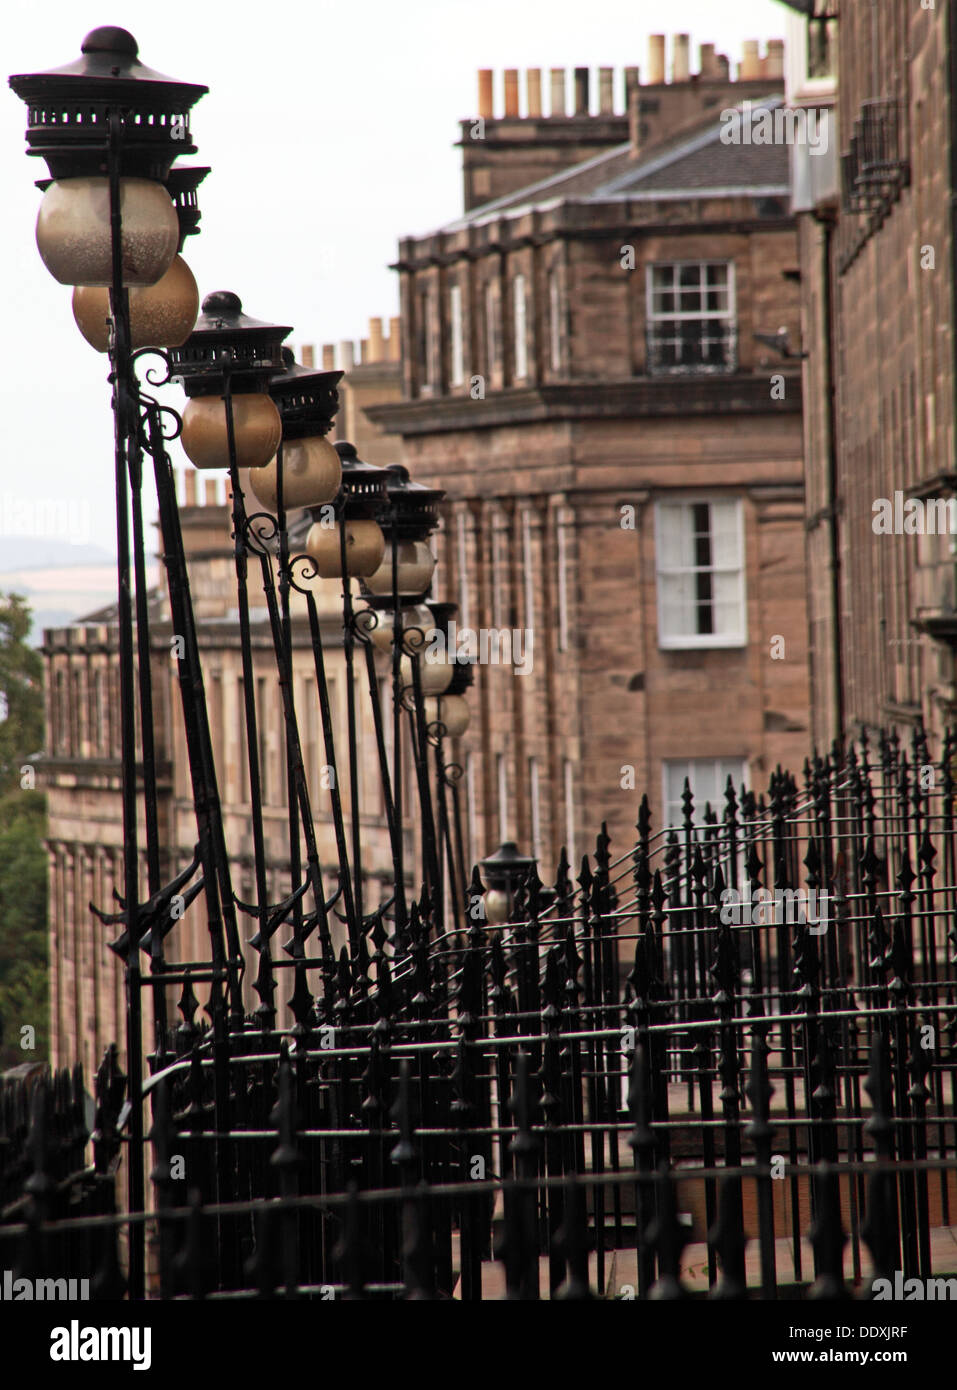 Bâtiments de la nouvelle ville d'Édimbourg, une architecture classique, des candélabres , Lothian, Écosse, Royaume-Uni Banque D'Images